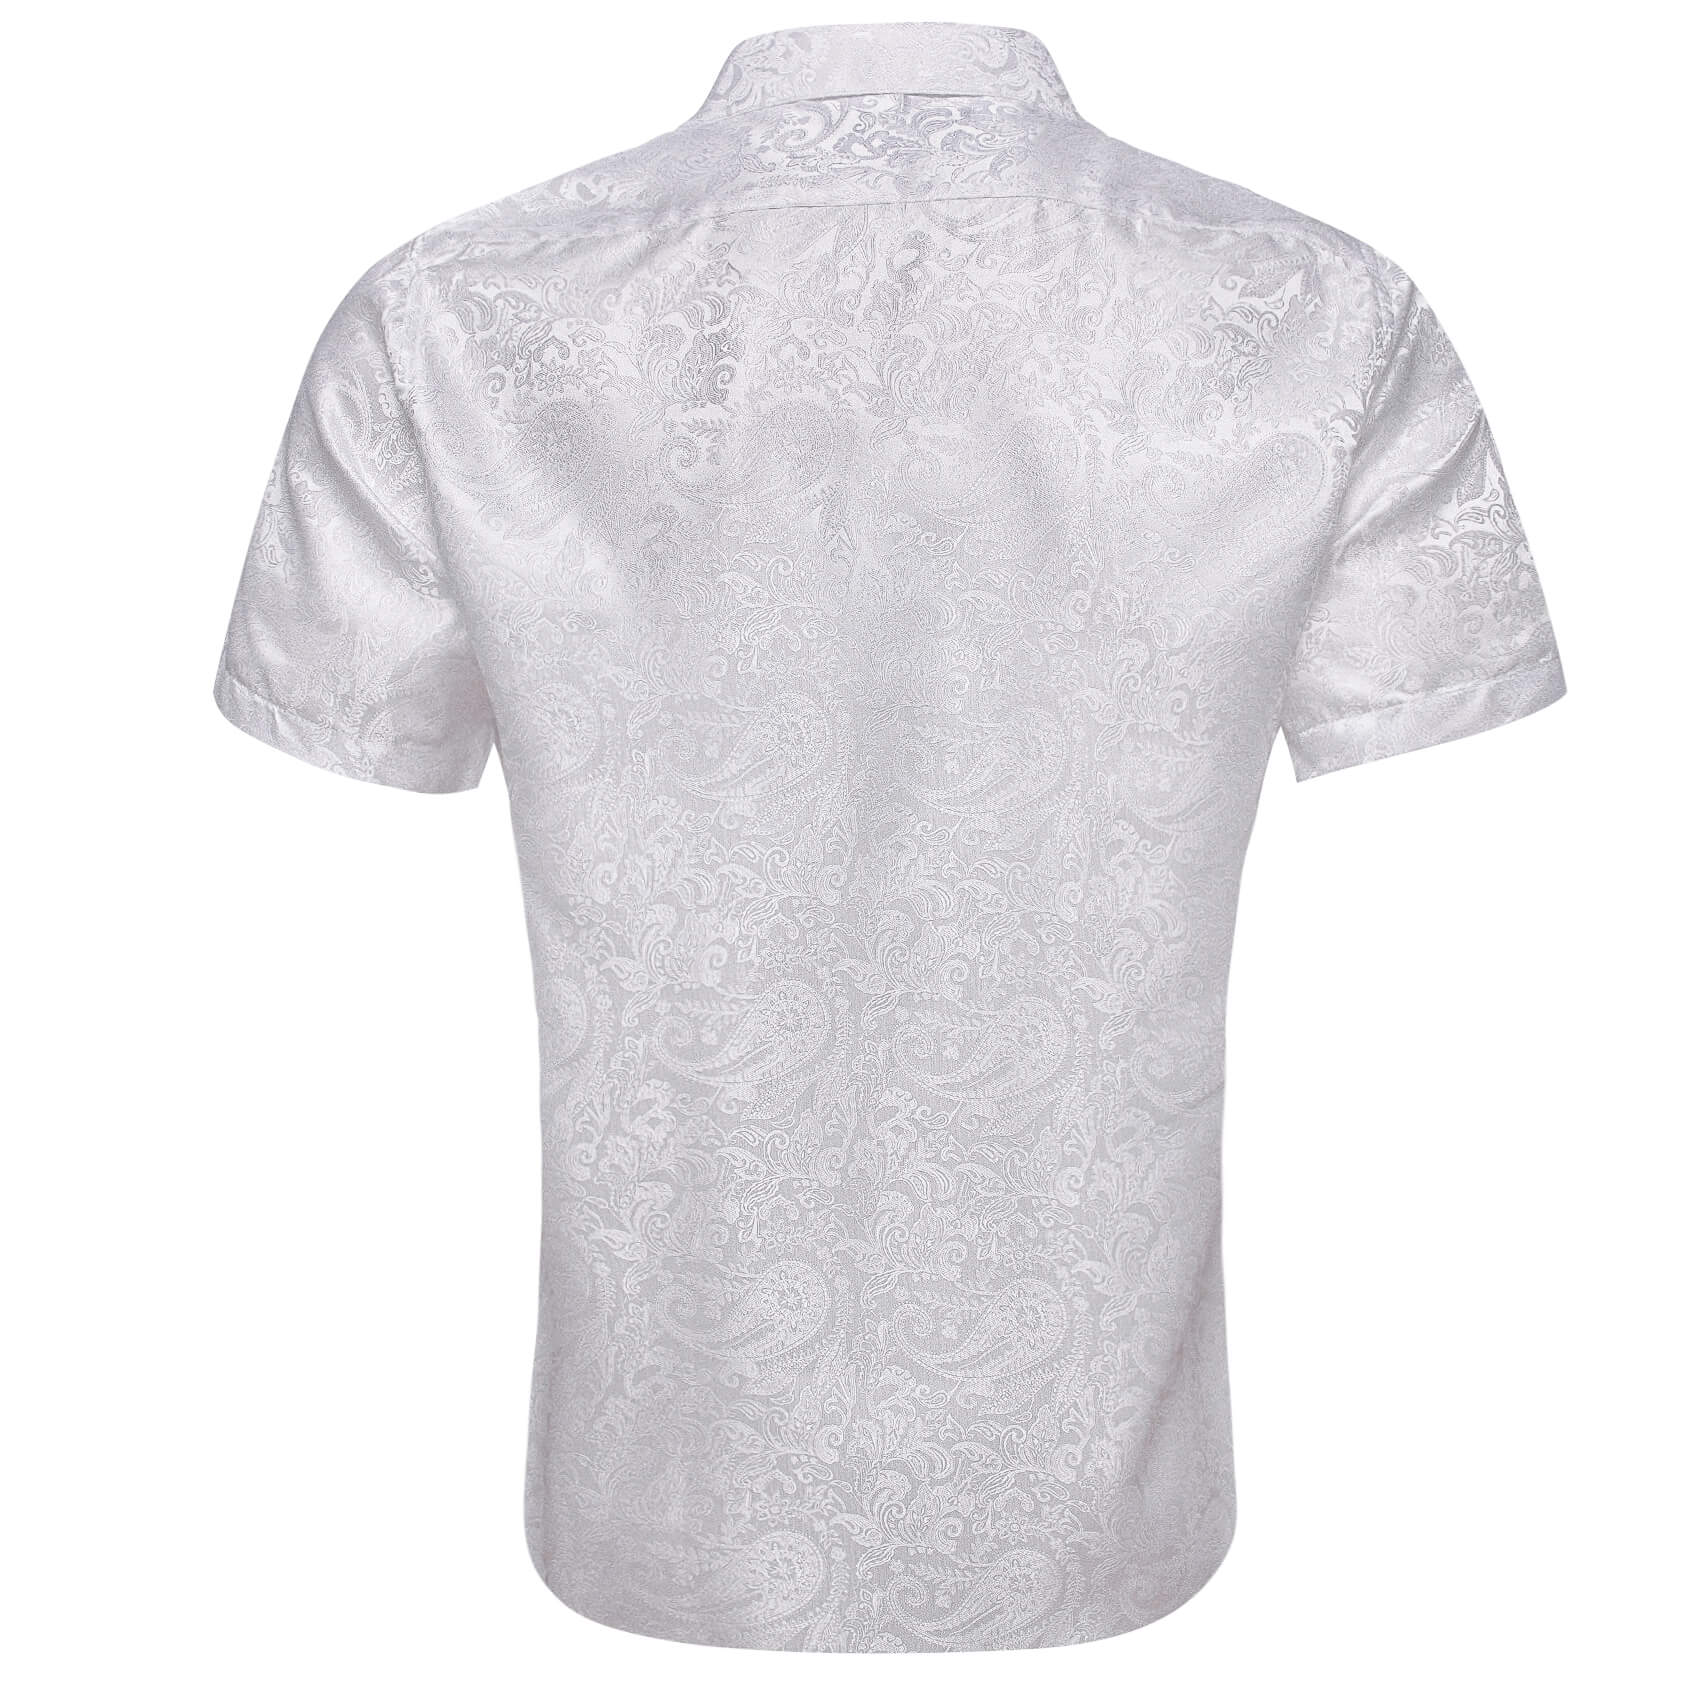  Short Sleeve Shirt Jacquard Paisley White Shirt